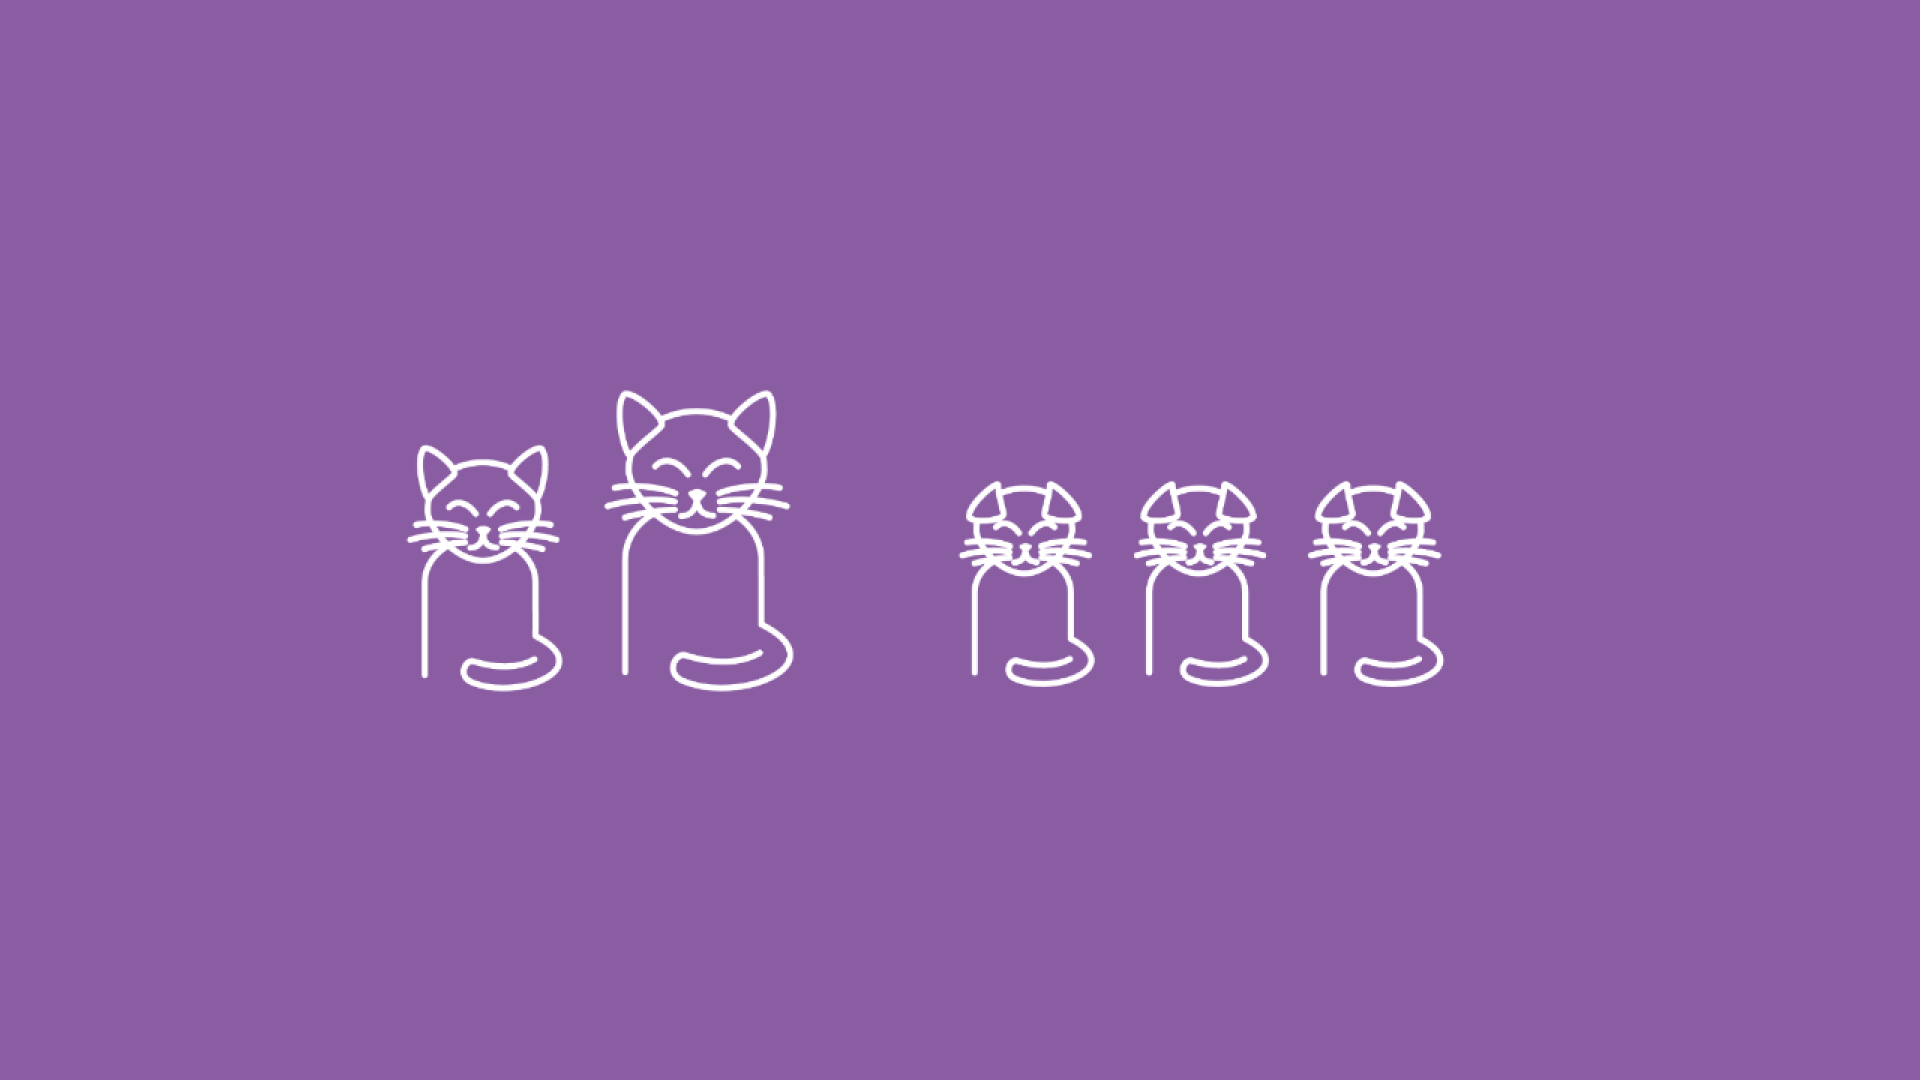 Hier sind eine Katze und ein Kater mit ihren 8 kleinen Kitten zu sehen, um die Relevanz einer Kastration aufzuzeigen